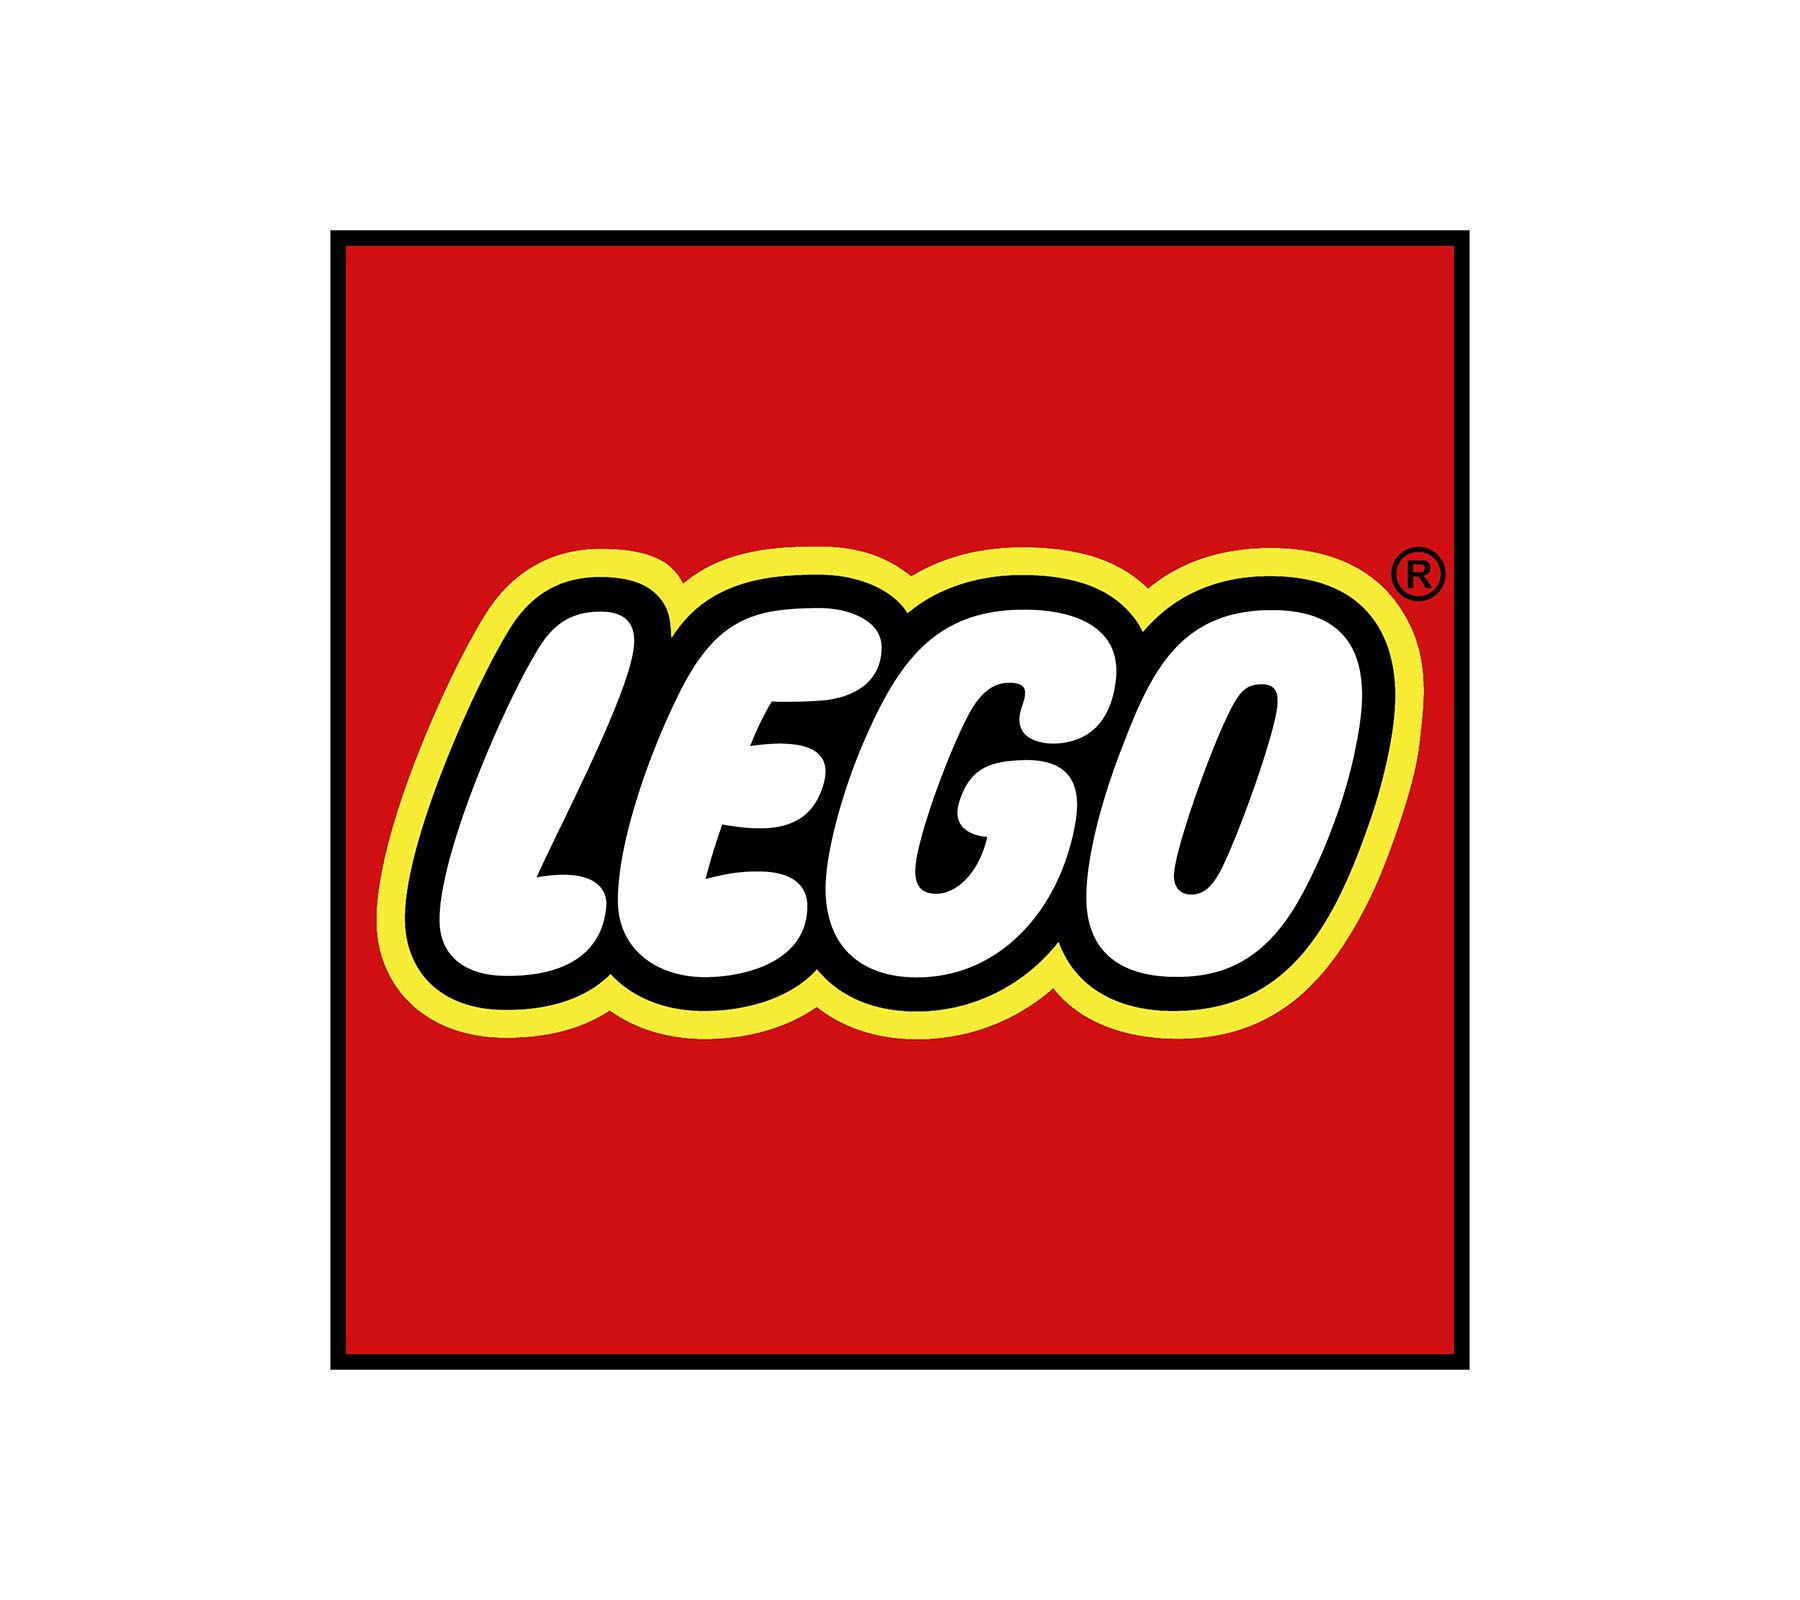 LEGO- ს სახელის გასაკვირი წარმოშობა